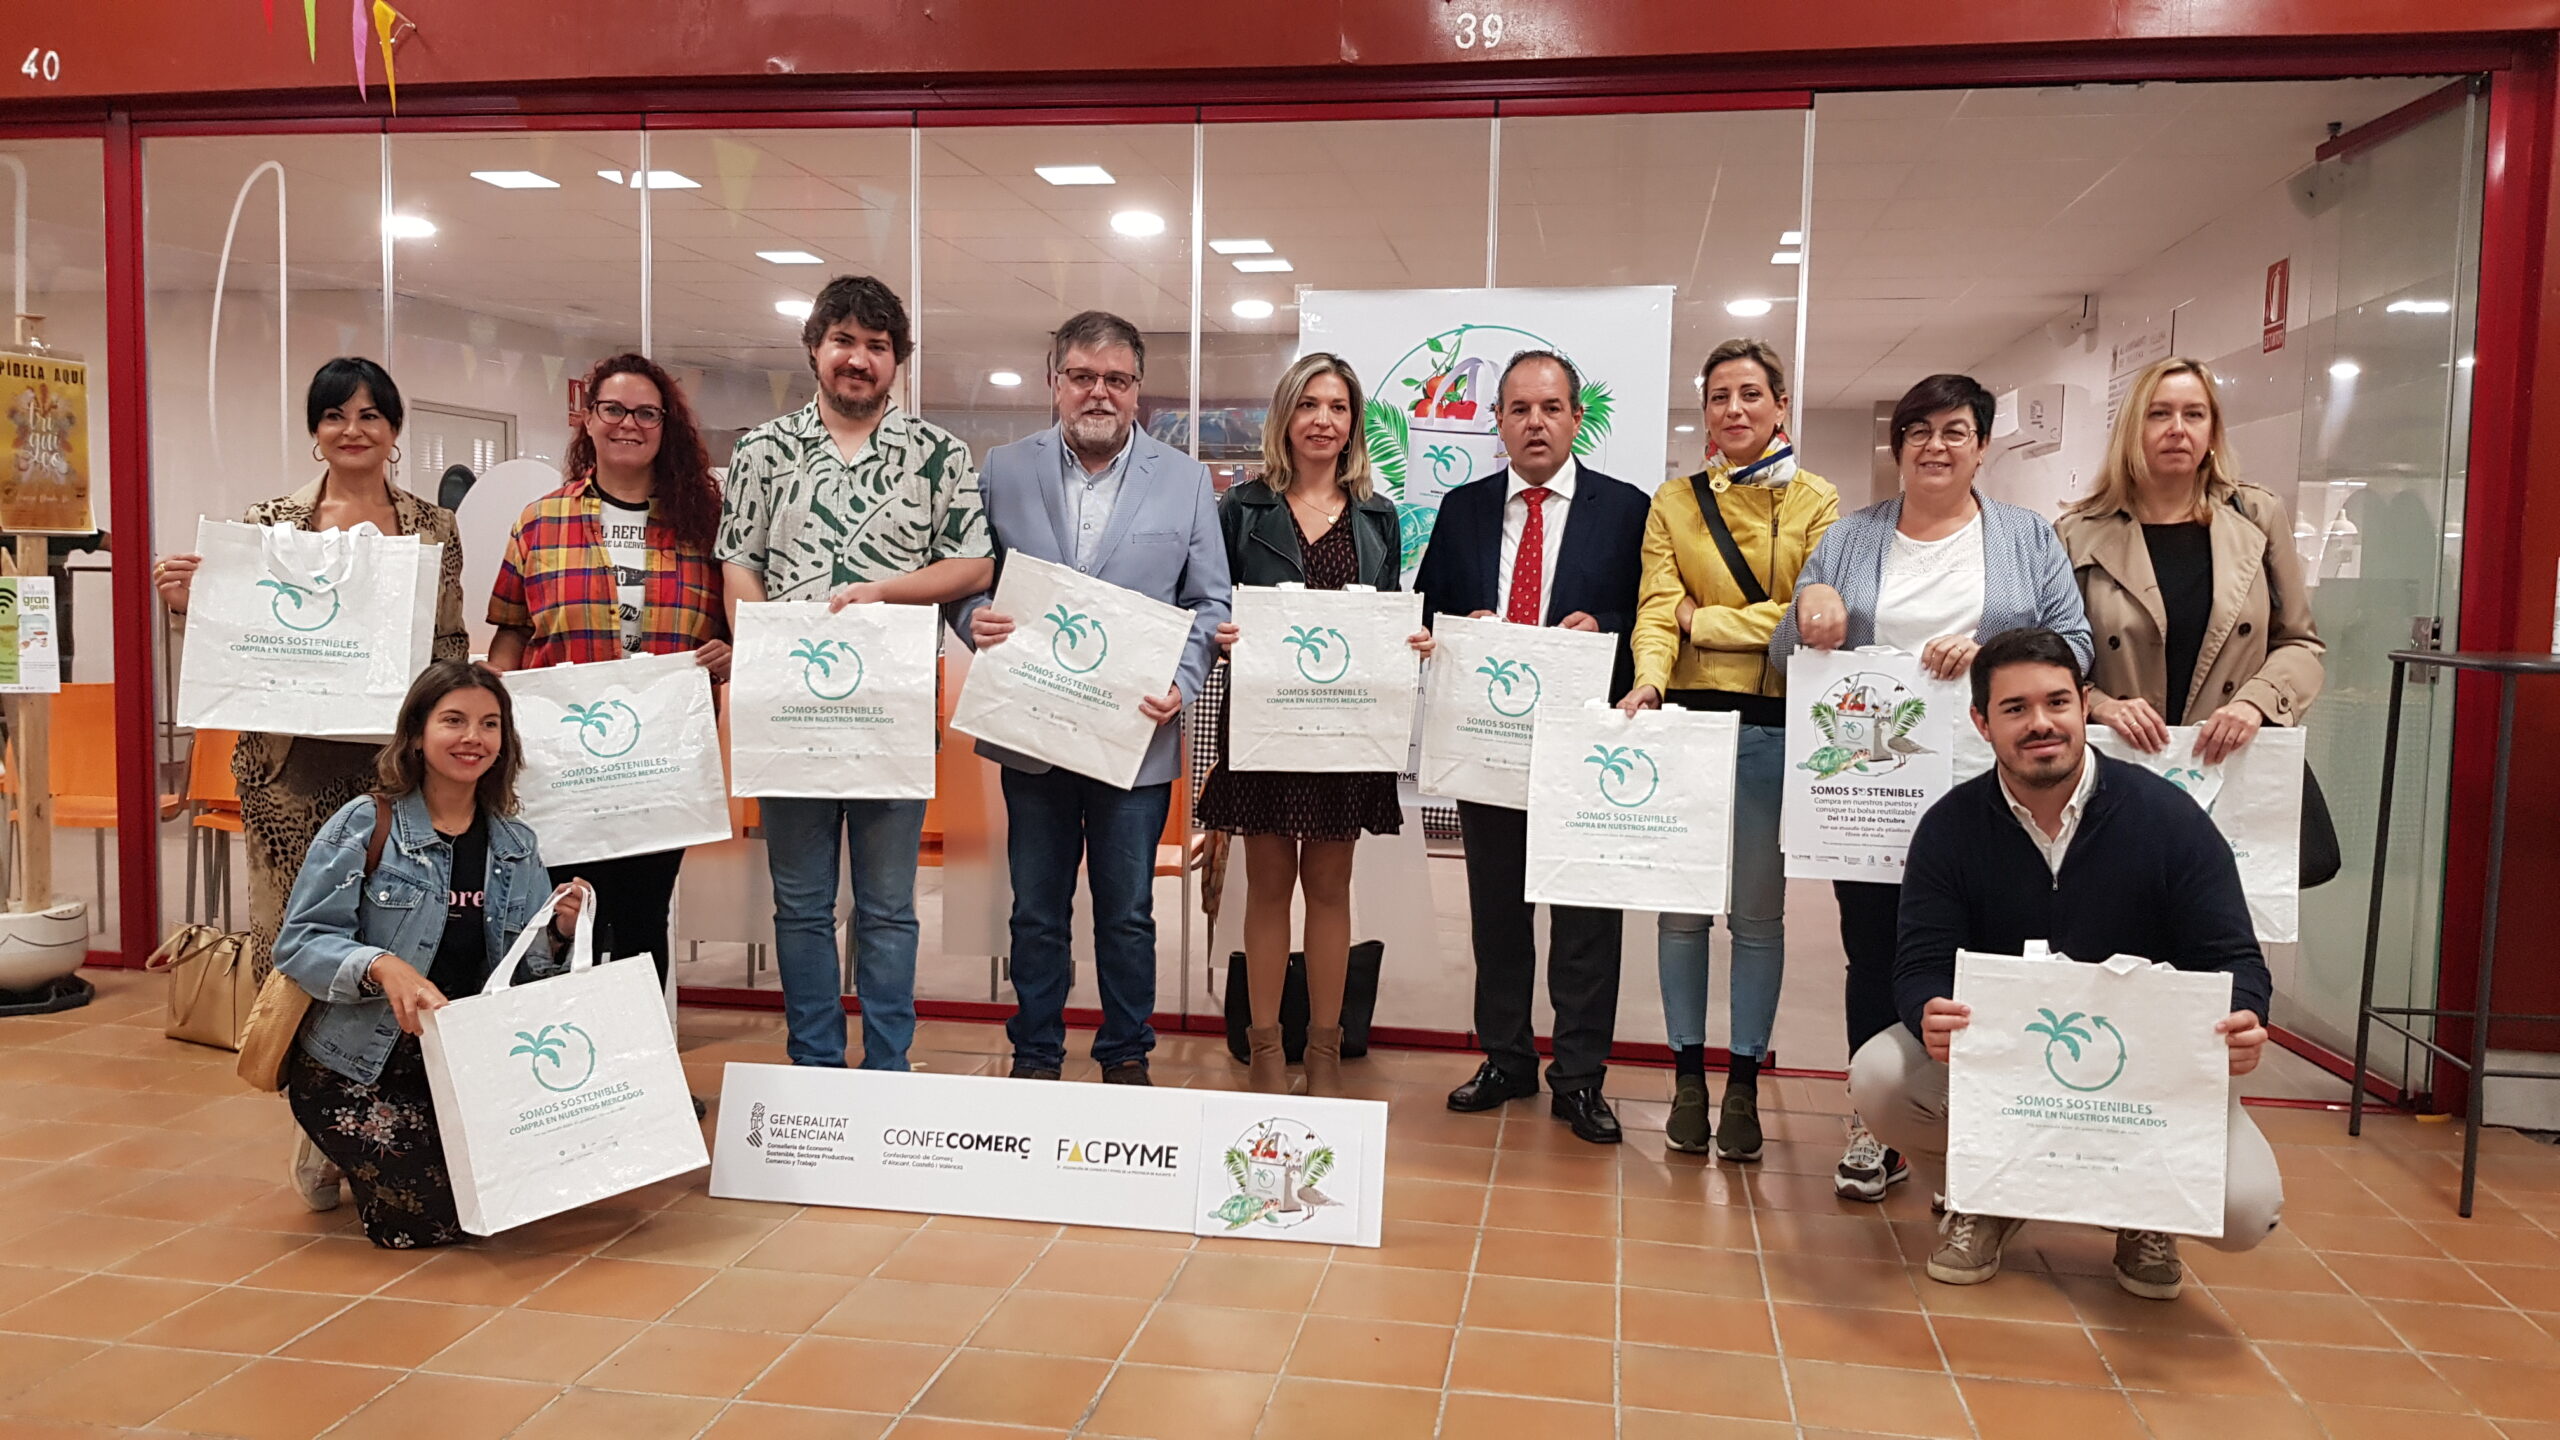 El Mercado de Villena repartirá 14.000 bolsas reutilizables dentro de la campaña “Somos Sostenibles”